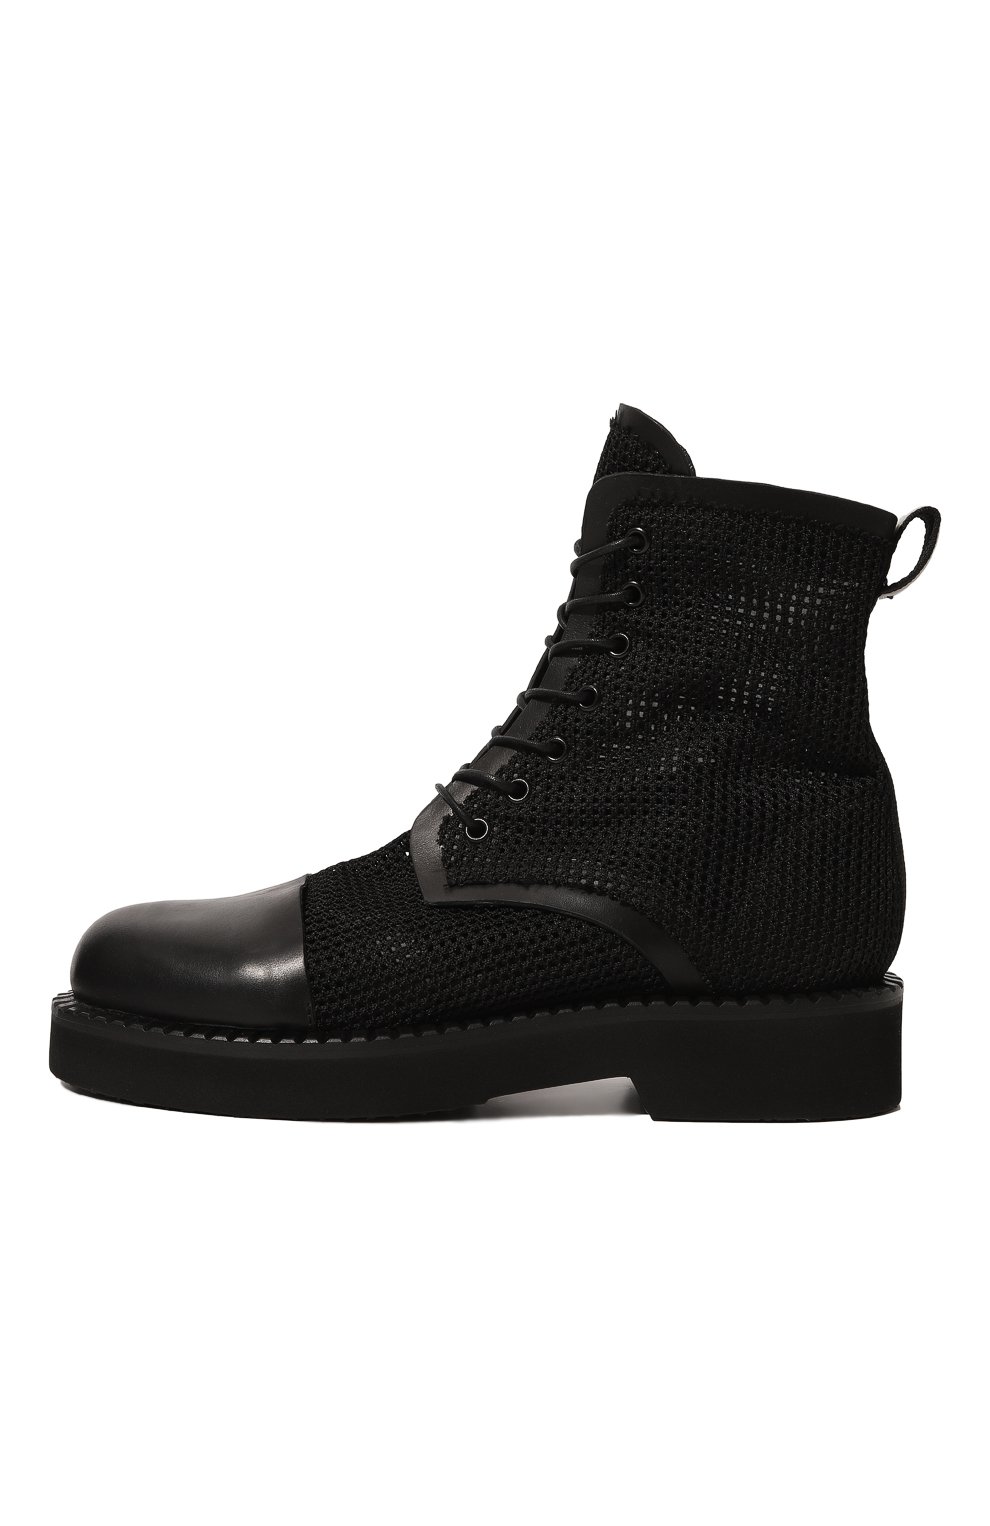 Комбинированные ботинки Premiata M6503/NEW R0DY YUK0N, цвет чёрный, размер 37 M6503/NEW R0DY YUK0N - фото 4